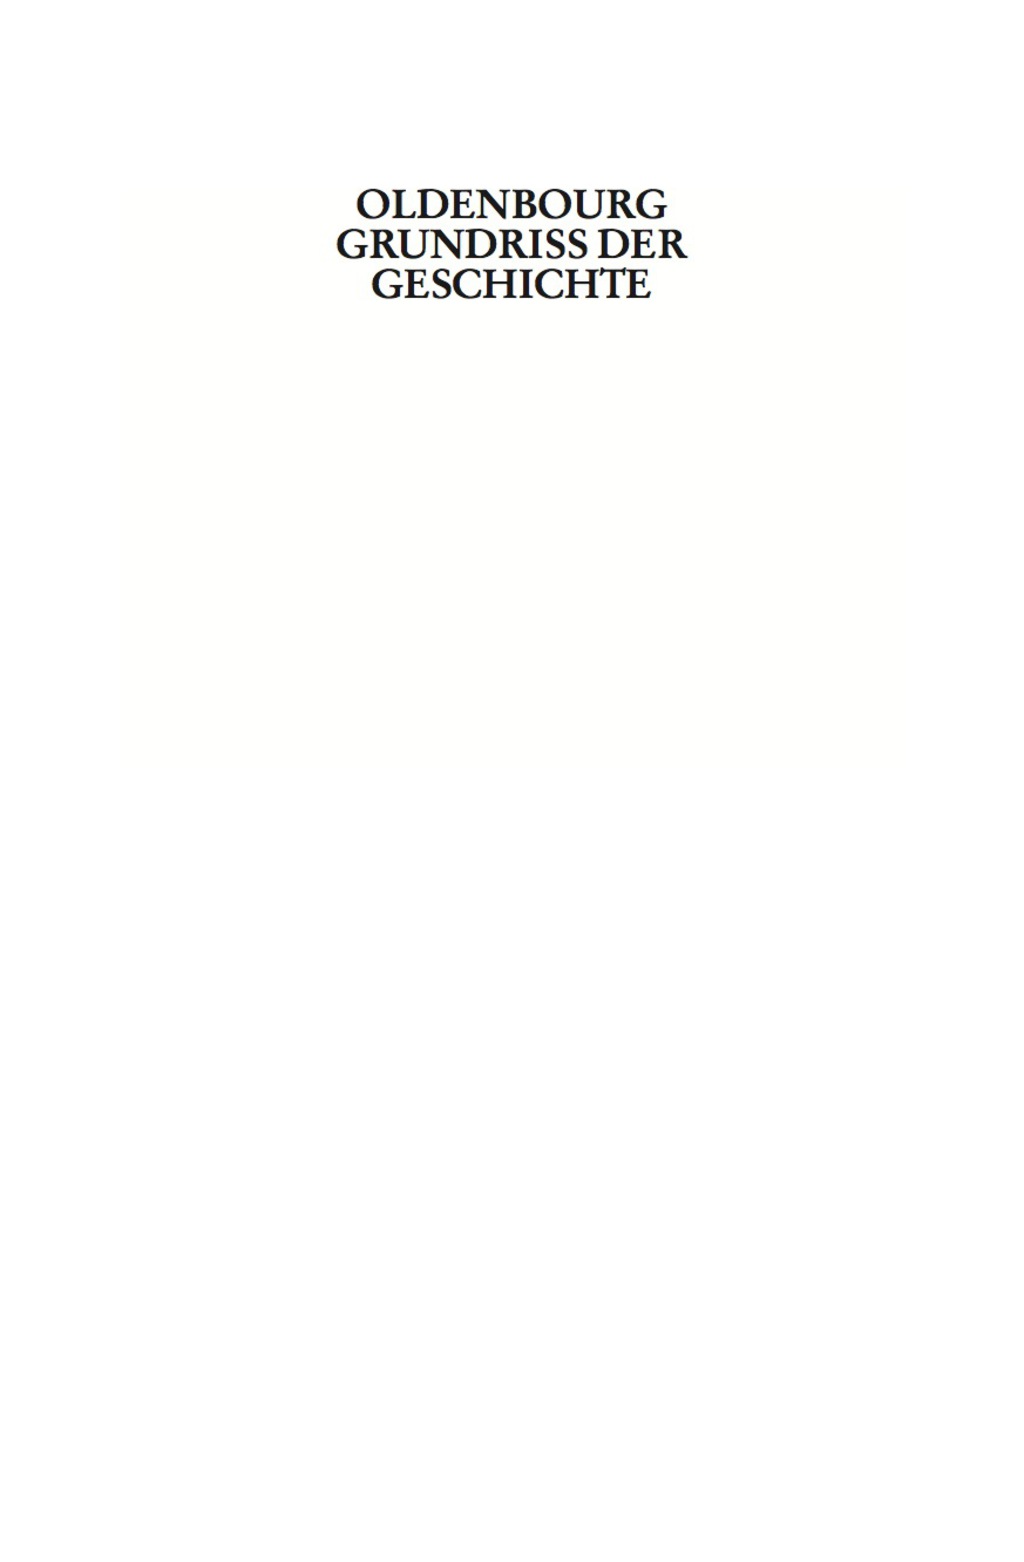 Die Bundesrepublik Deutschland - 5th Edition (eBook)